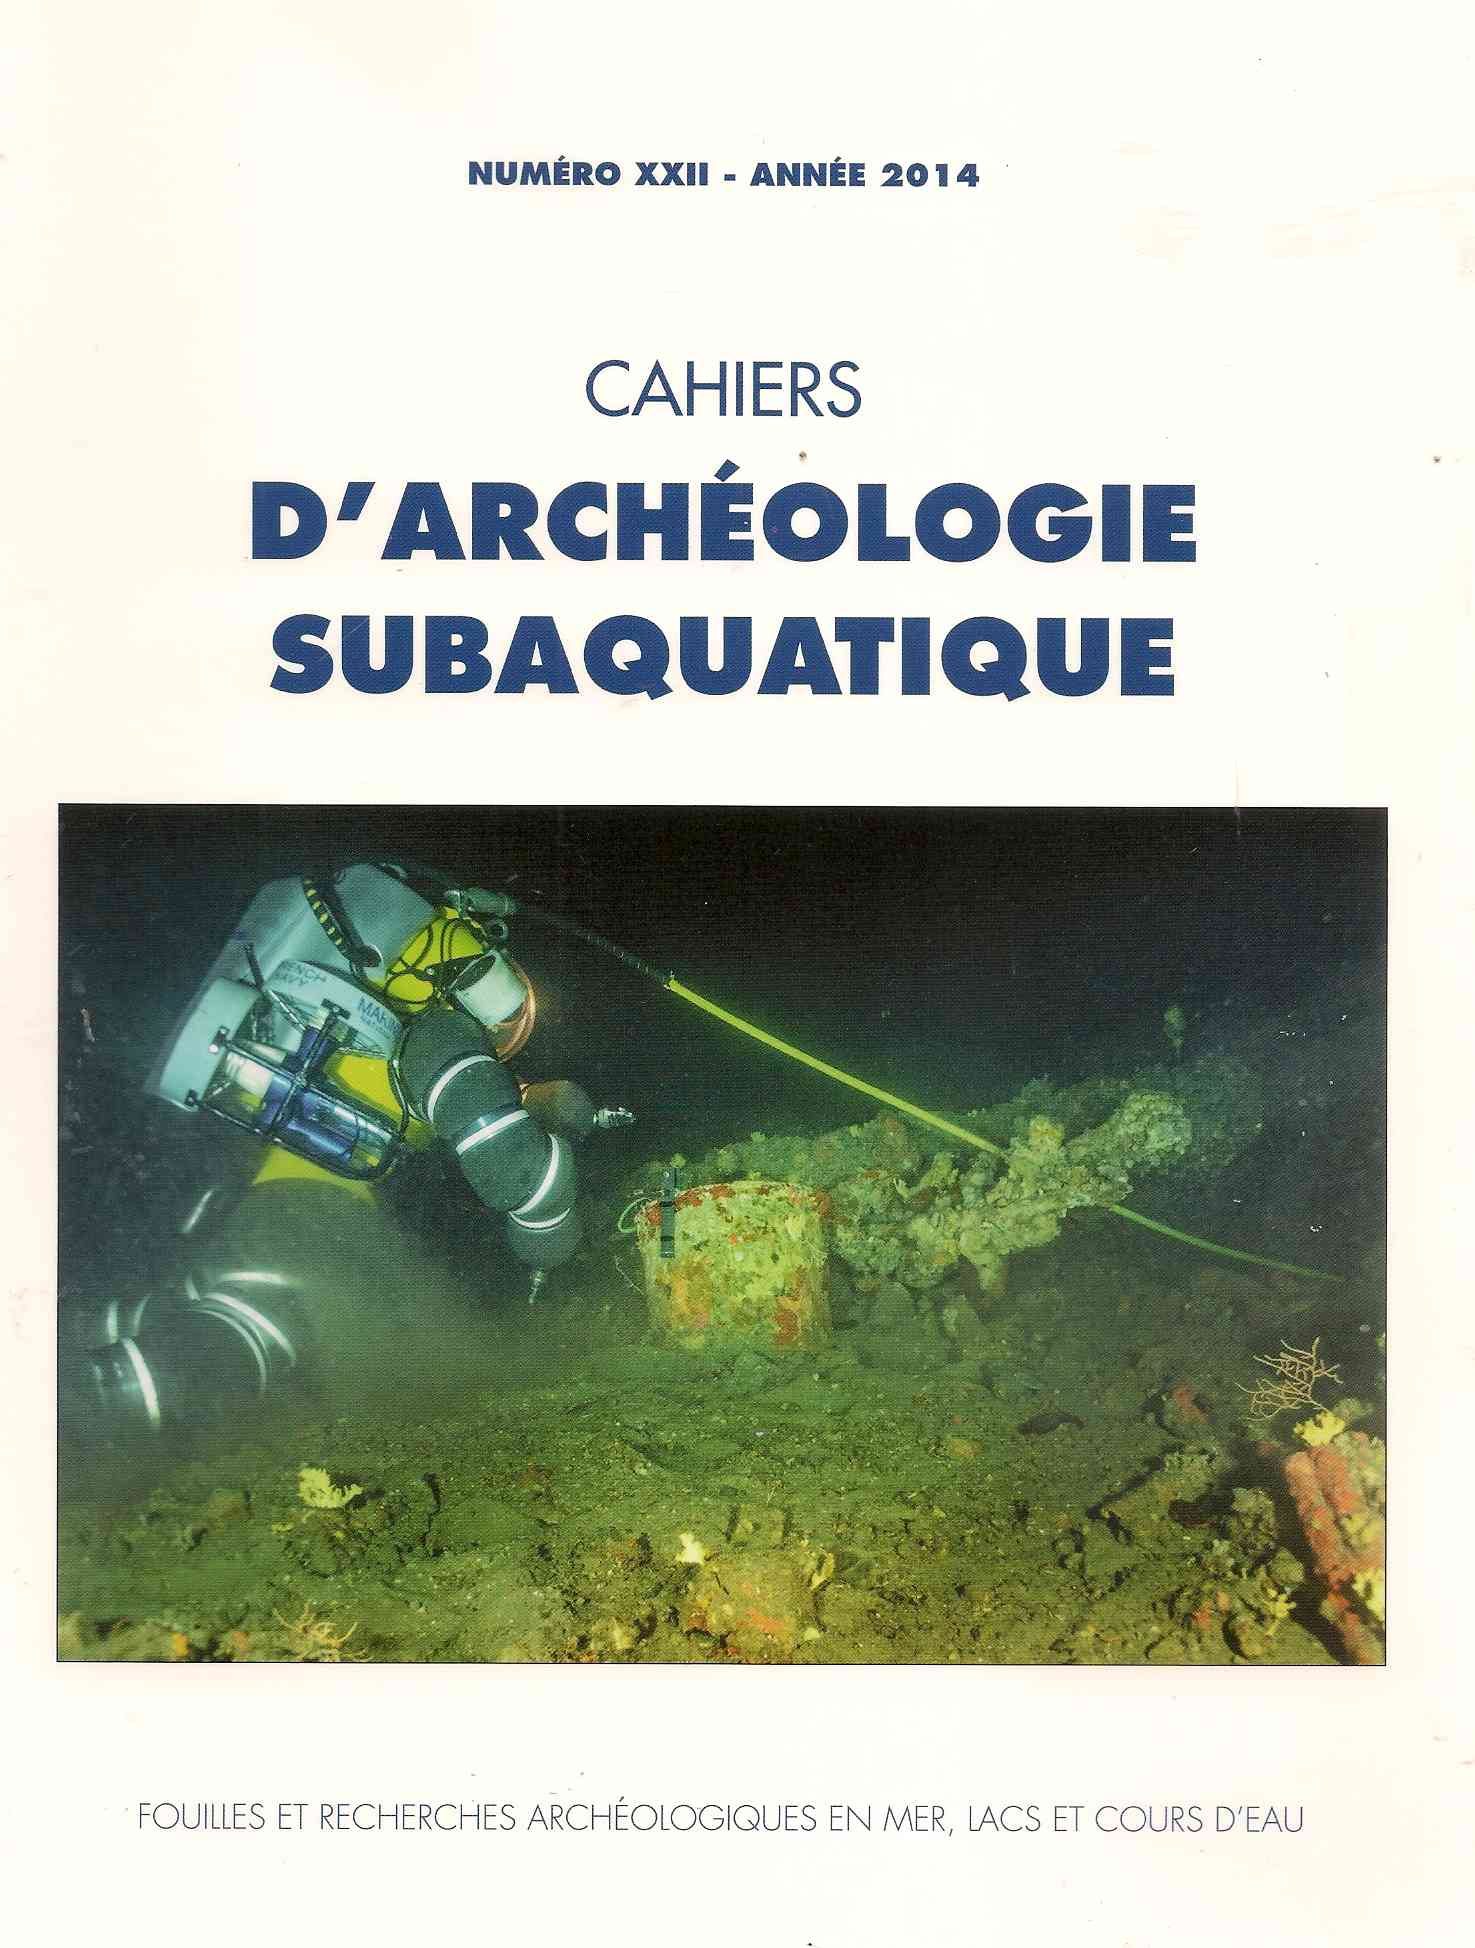 Fouilles archéologiques sous-marines en Corse